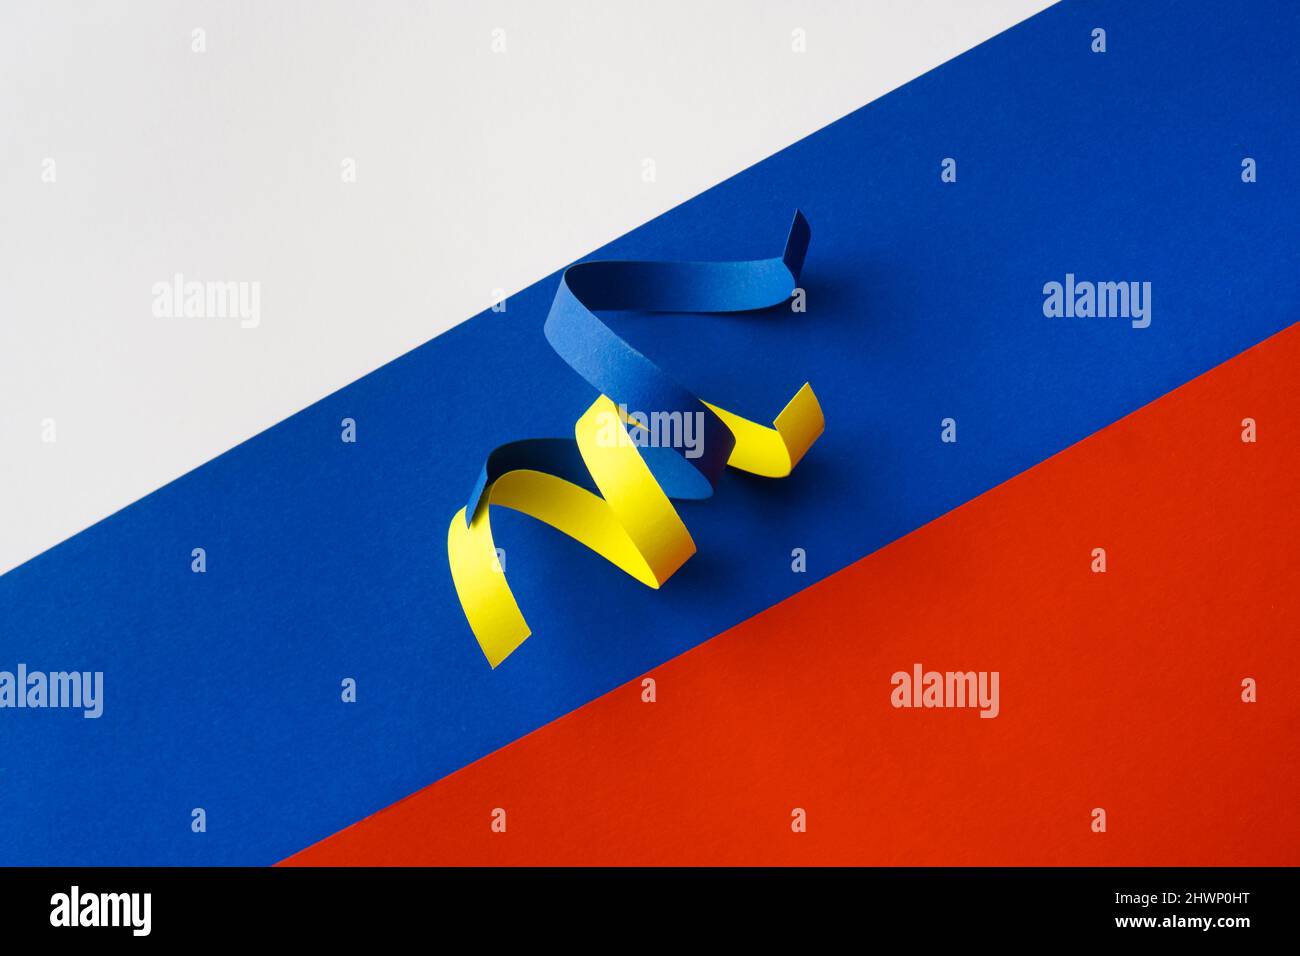 Nastri blu e giallo come simbolo dell'Ucraina sulla bandiera della Russia. Concetto di aggressione russa Foto Stock